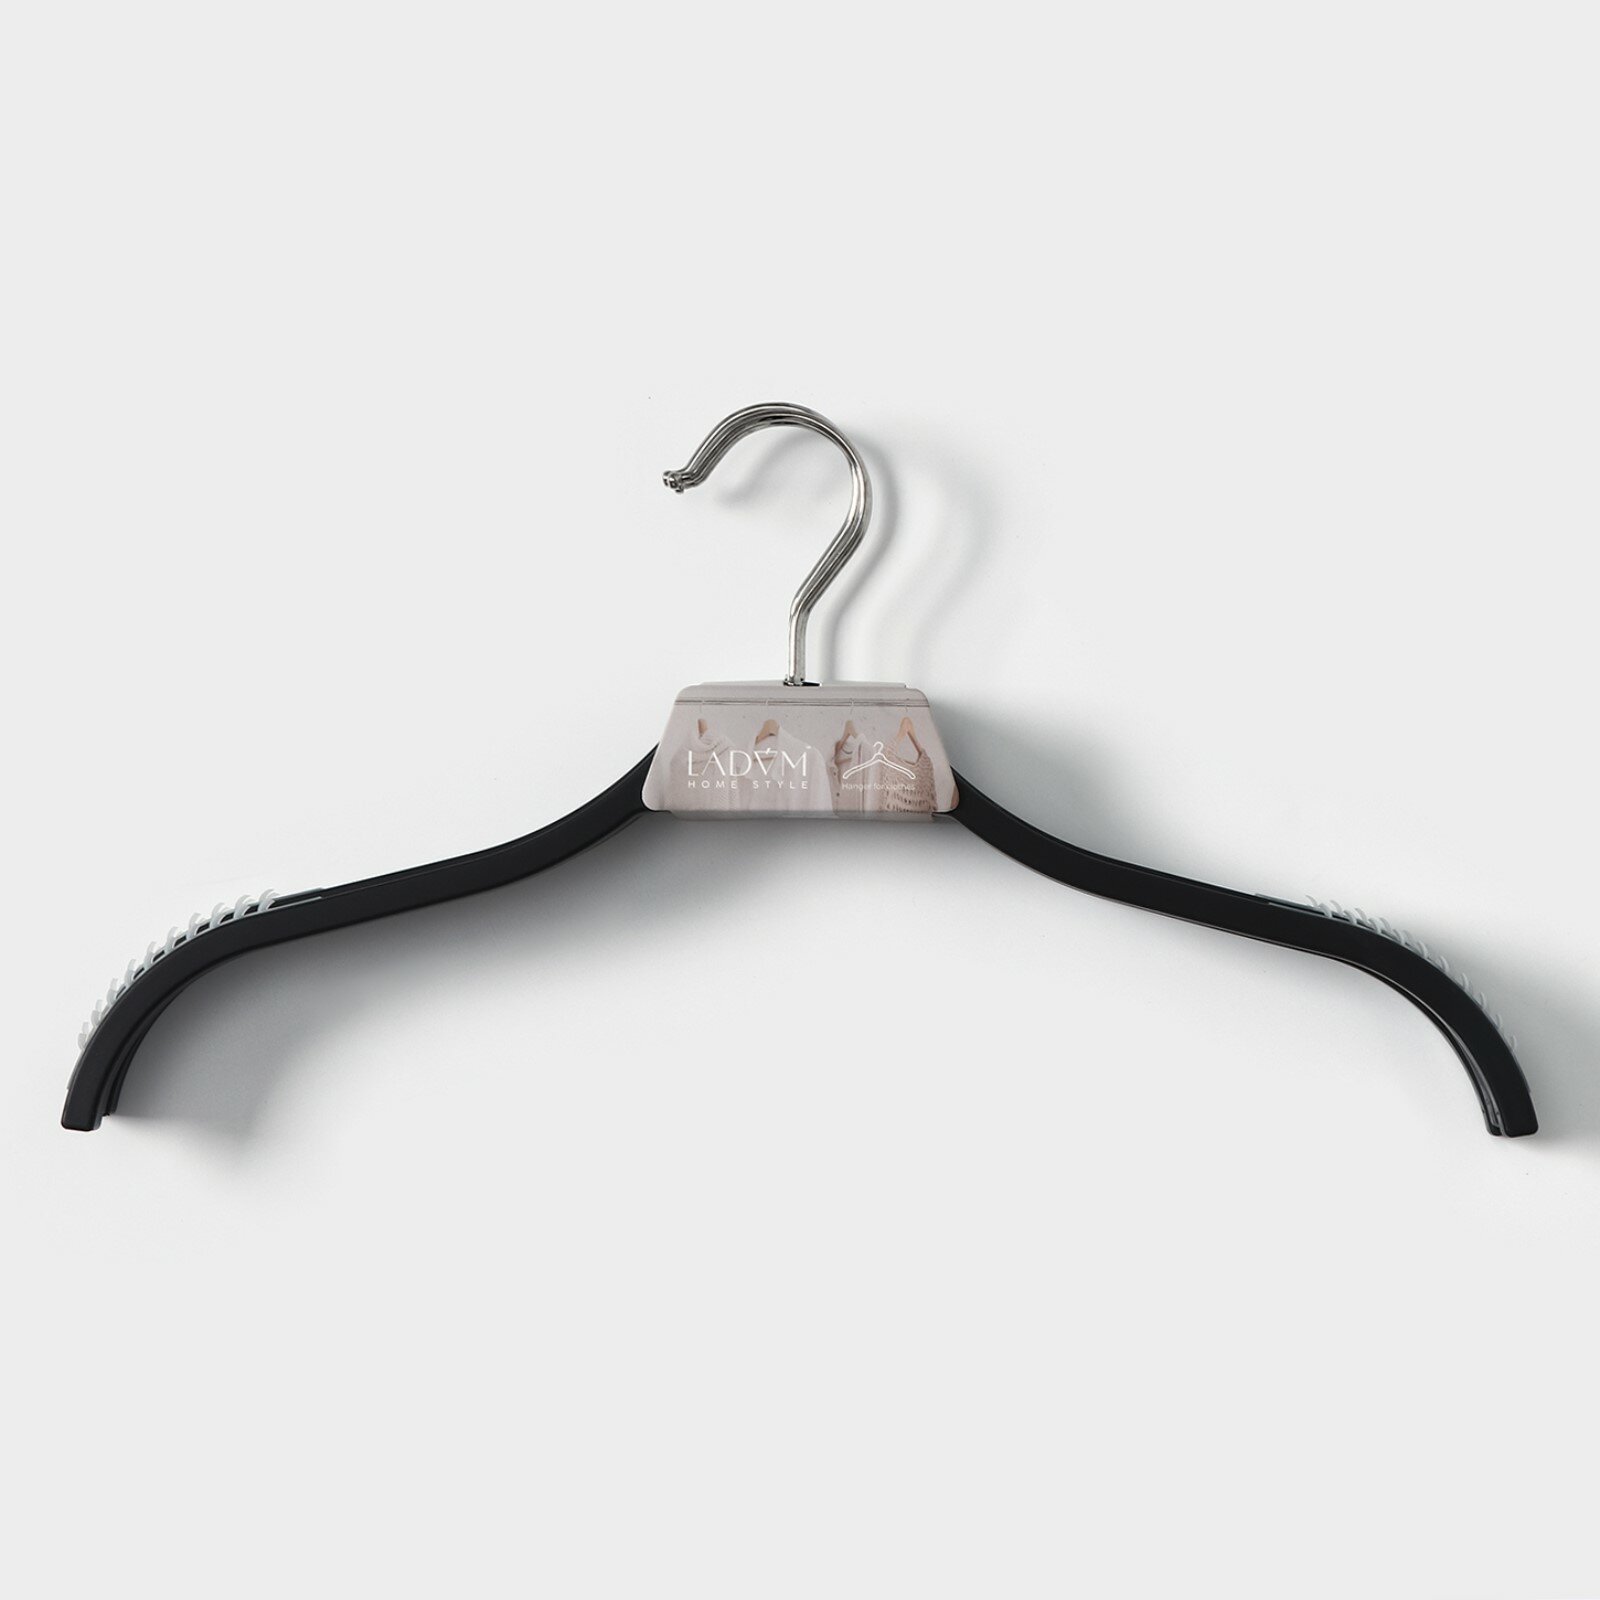 Вешалка LaDom, набор 3 шт, антискользящие силиконовые вставки, плечики для одежды, цвет черный